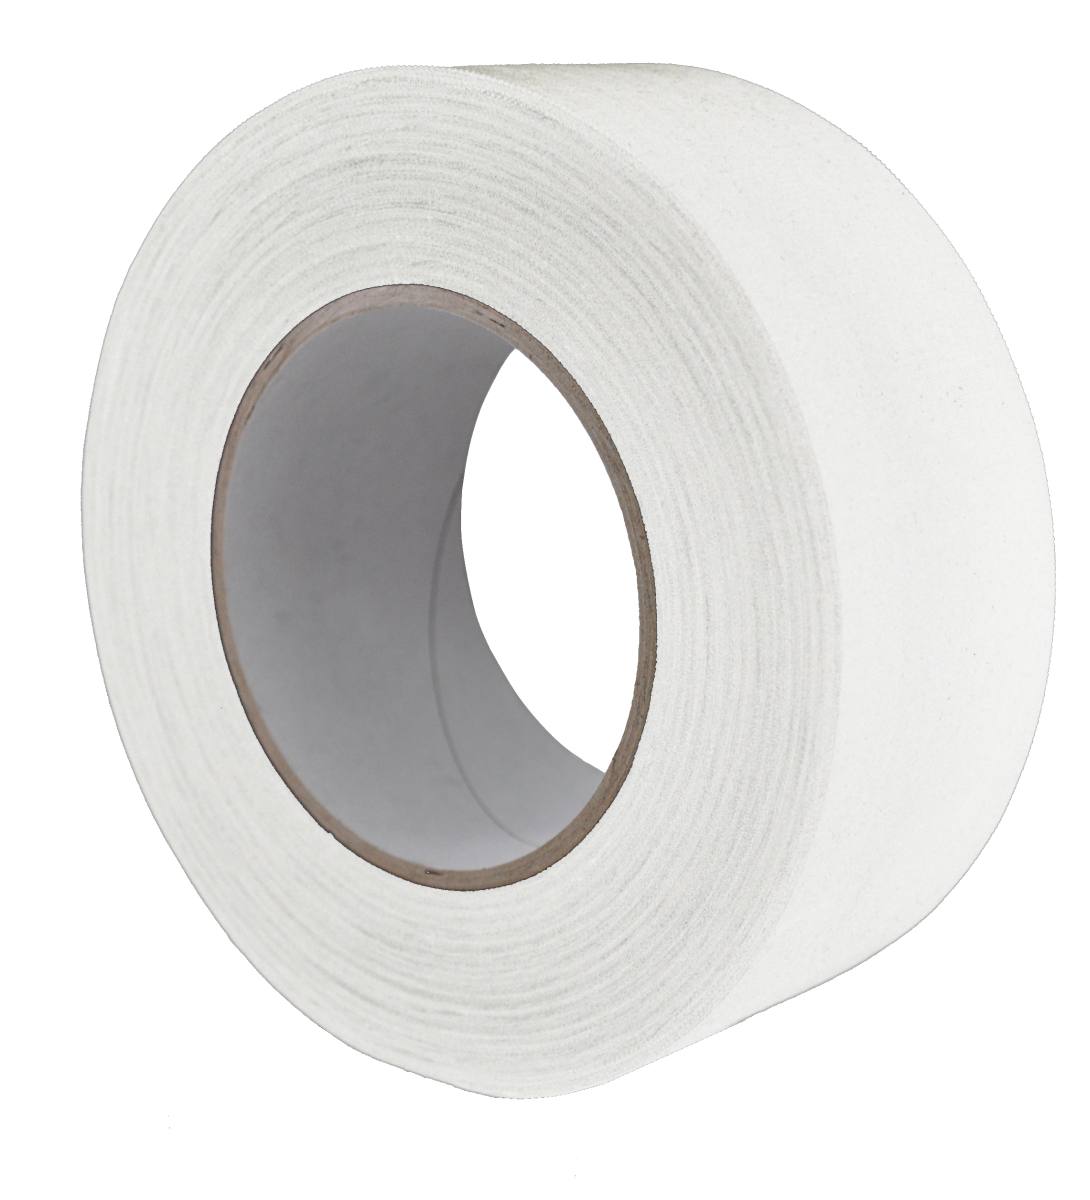 S-K-S 970 Raw fabric adhesive tape, 200 mm x 50 m, white, 0.240 mm